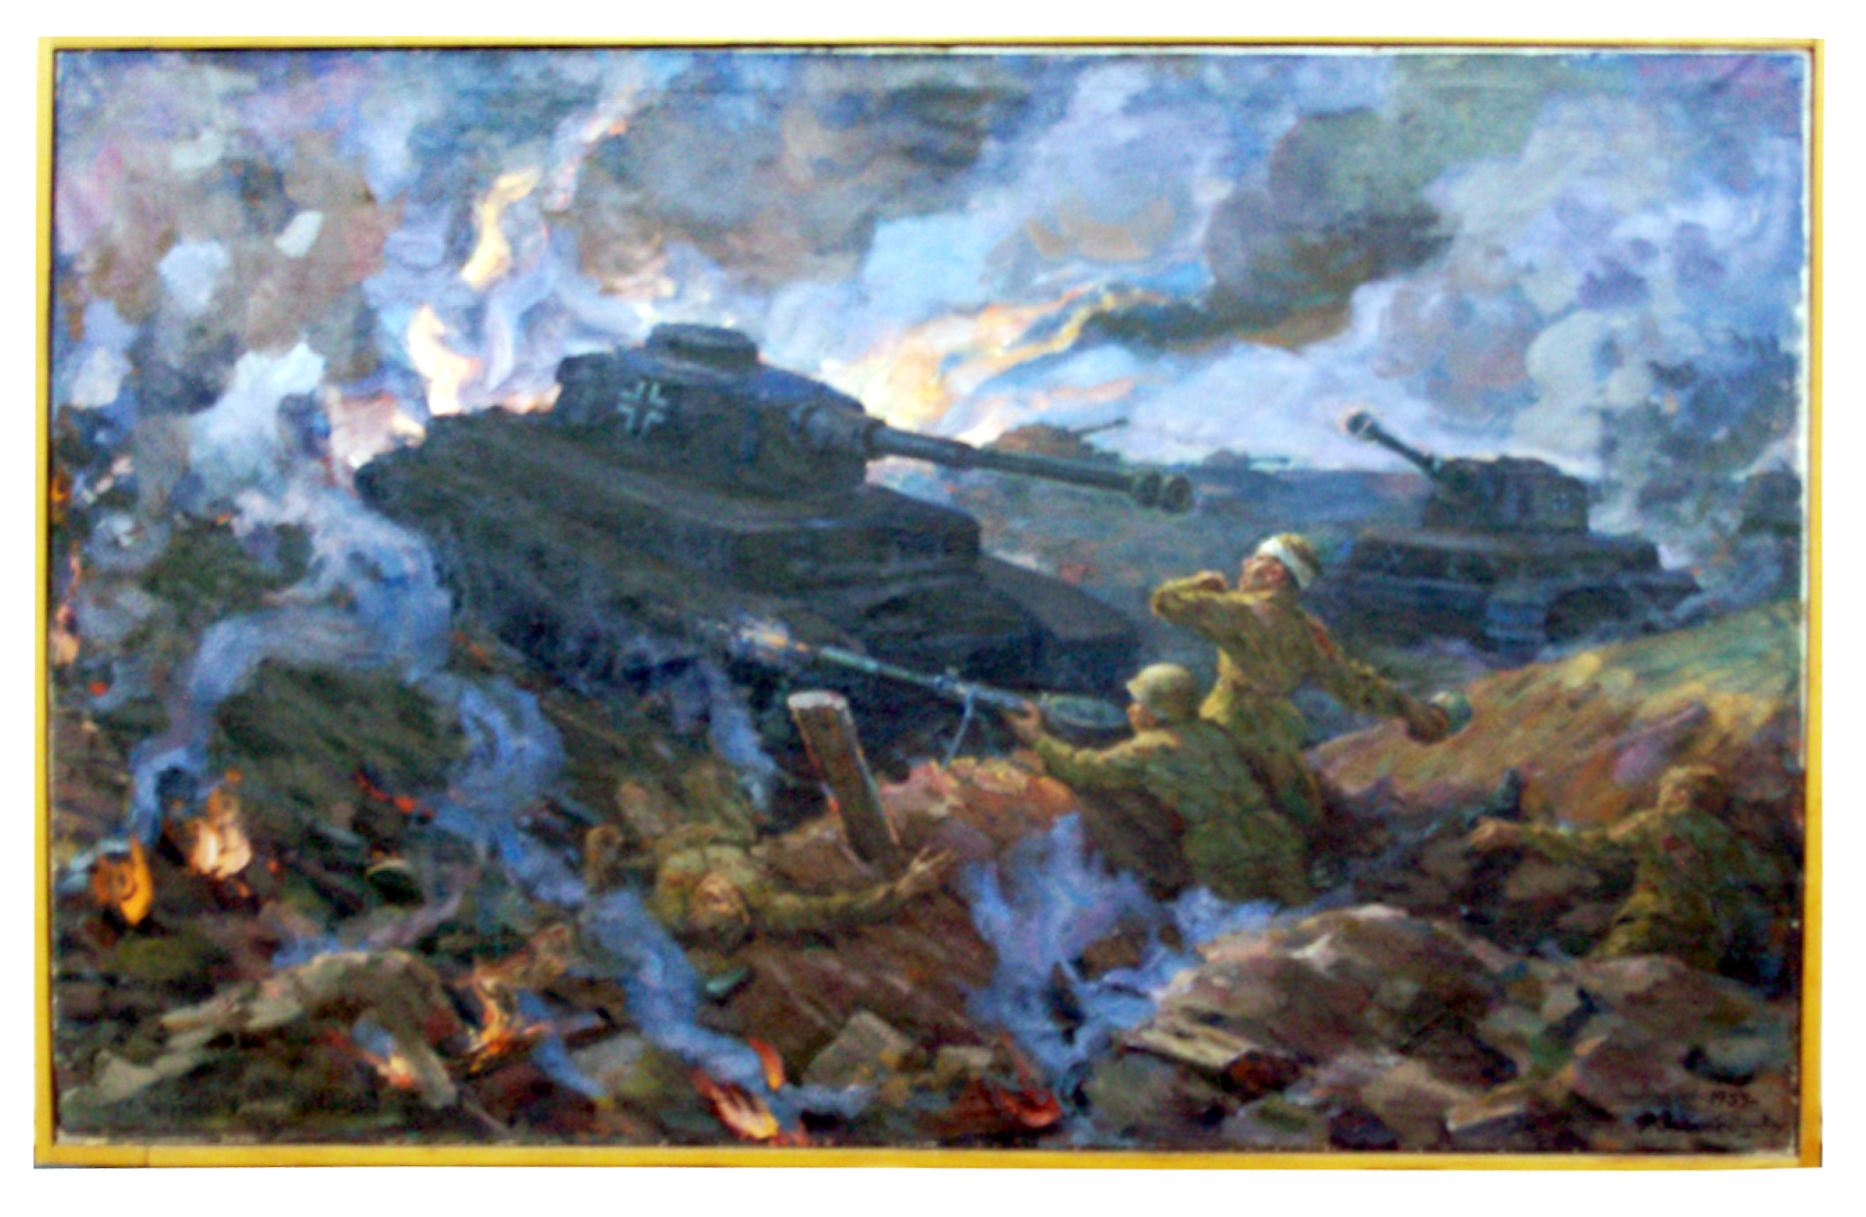 Картина бывшего курсанта 2-го ОВПУ Ф. И. Загороднюка, посвященная курсантам 3-го батальона 2-го ОКП